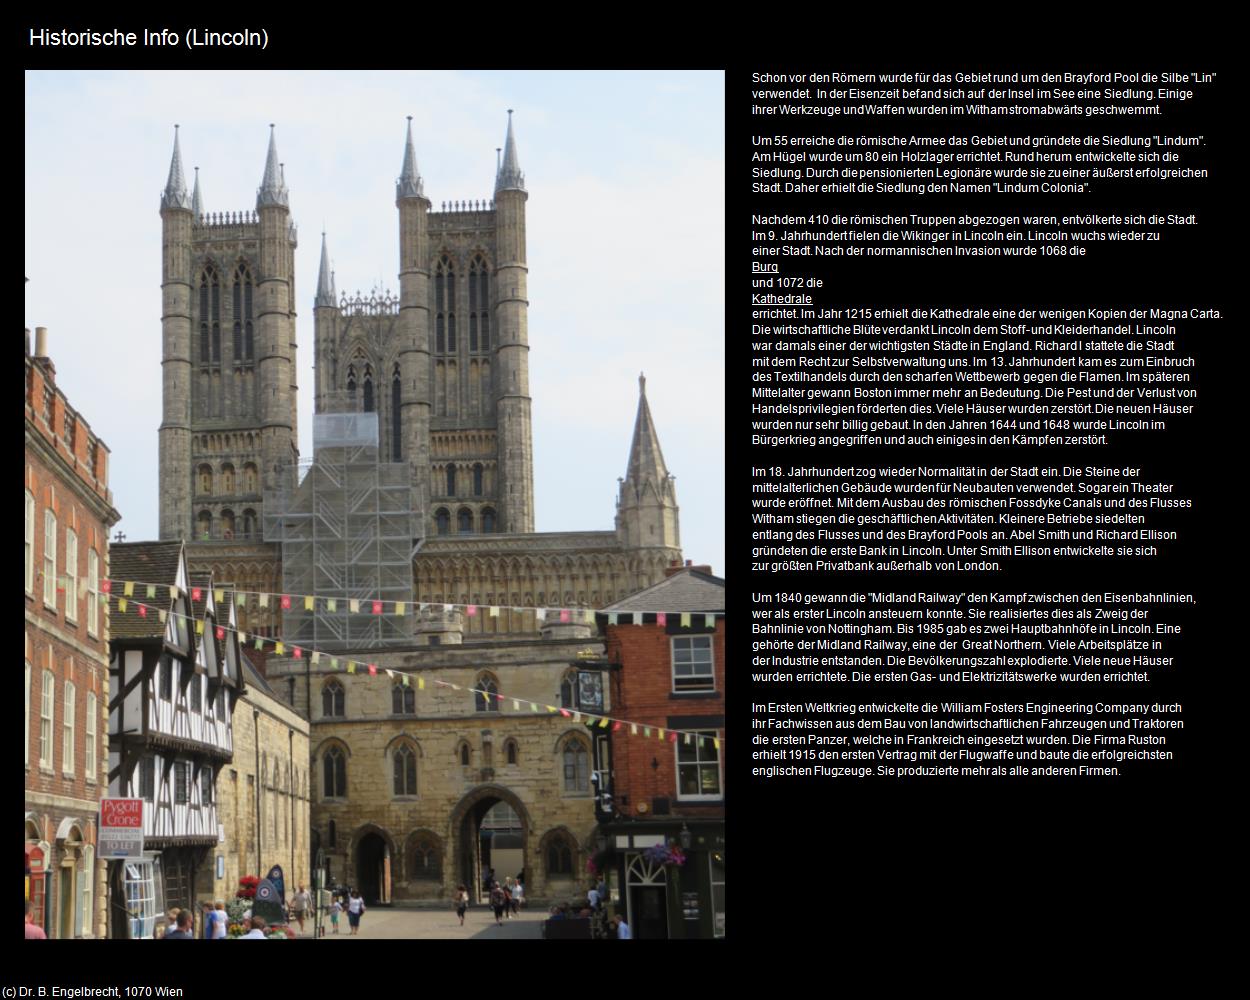 Historische Info  (Lincoln, England) in Kulturatlas-ENGLAND und WALES(c)B.Engelbrecht